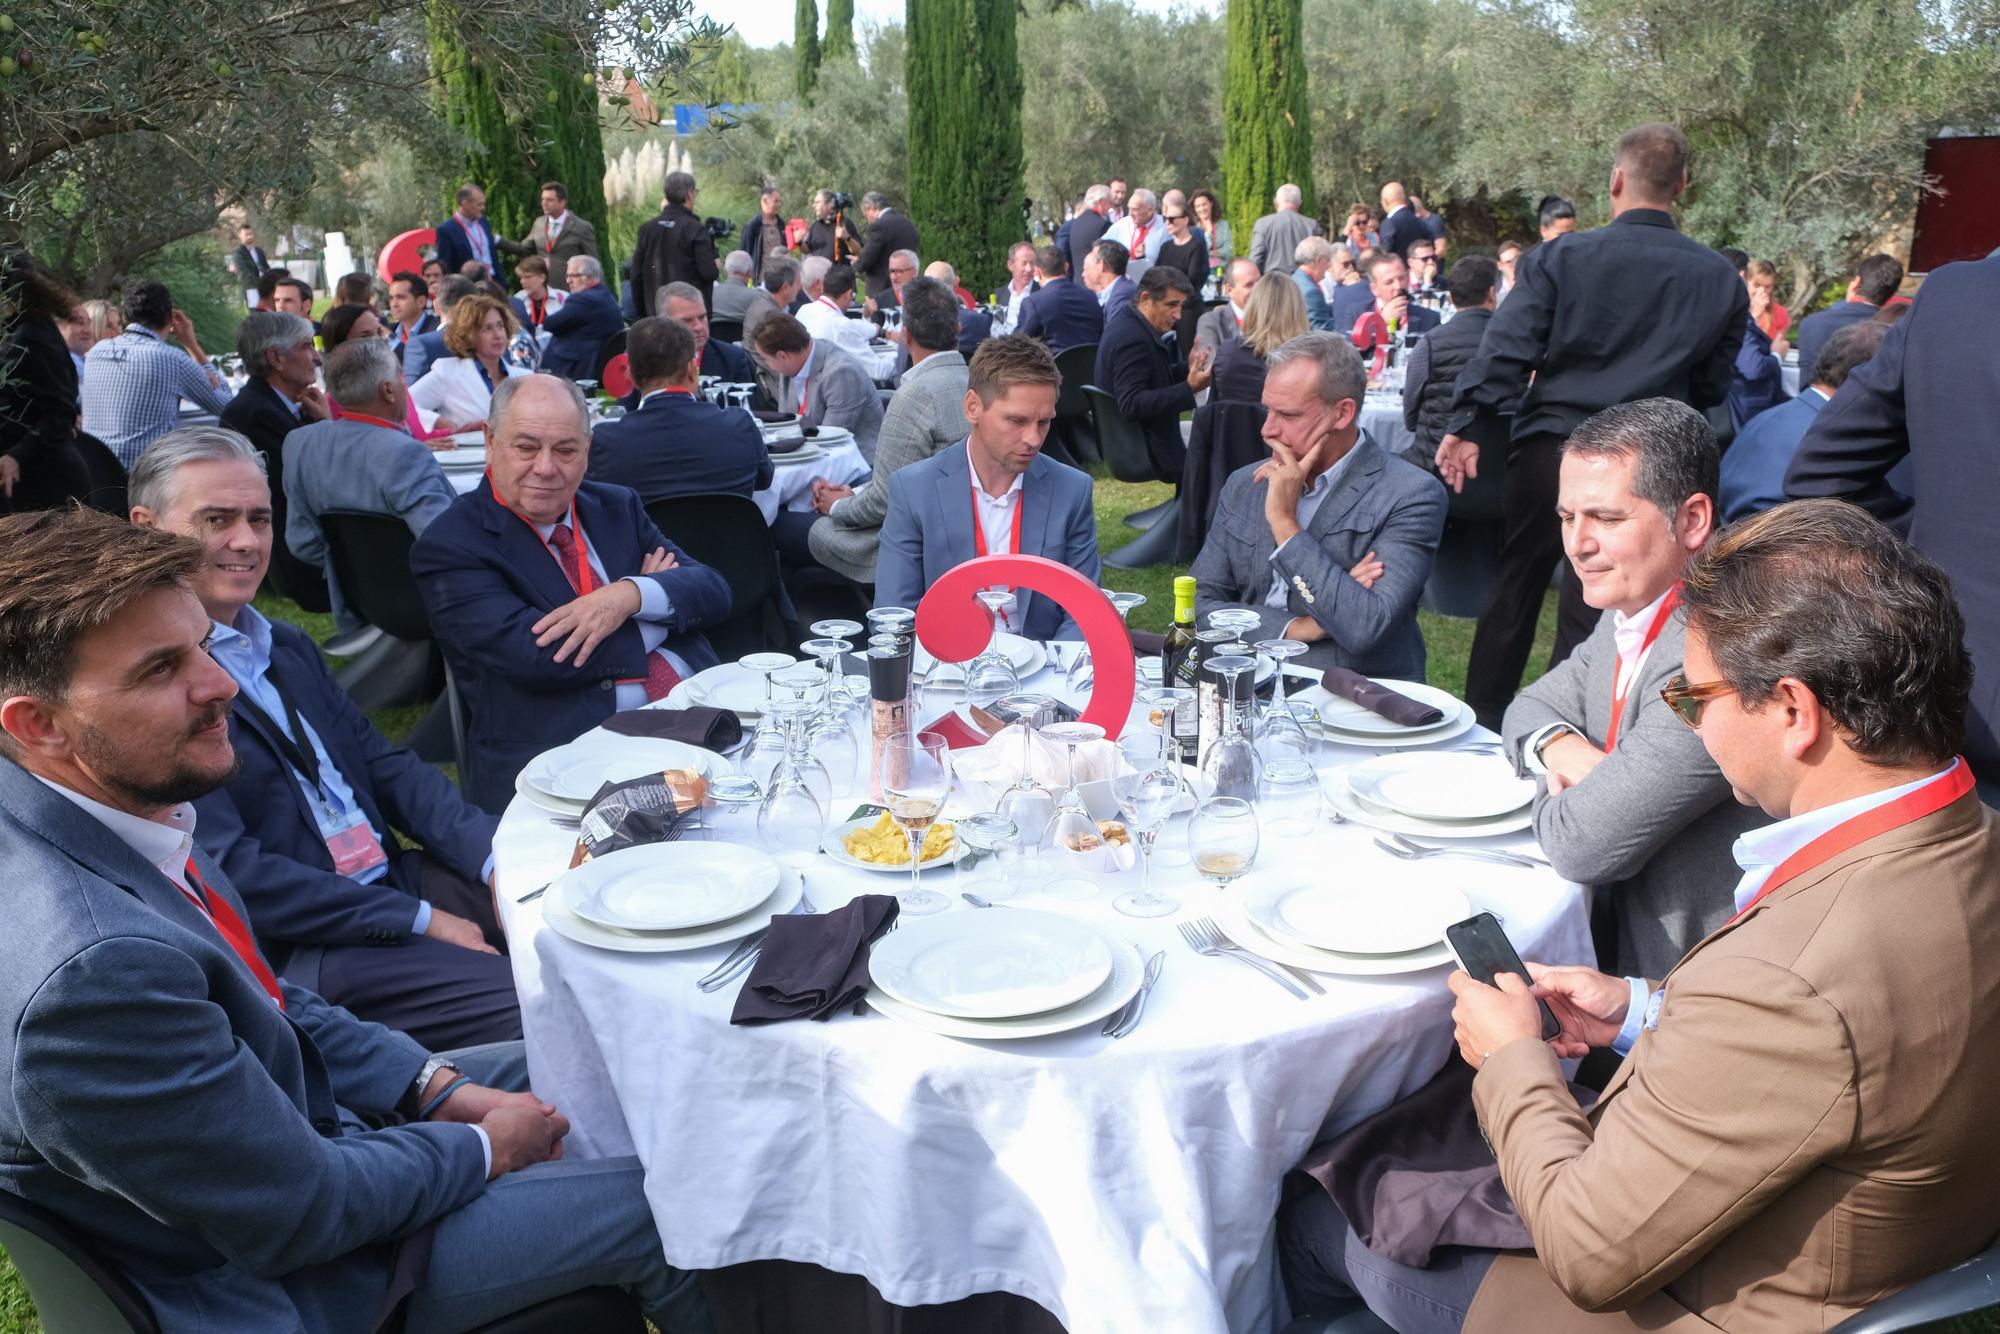 El tenista Ferrero apadrina el Cámara Business Club de empresas de Alicante